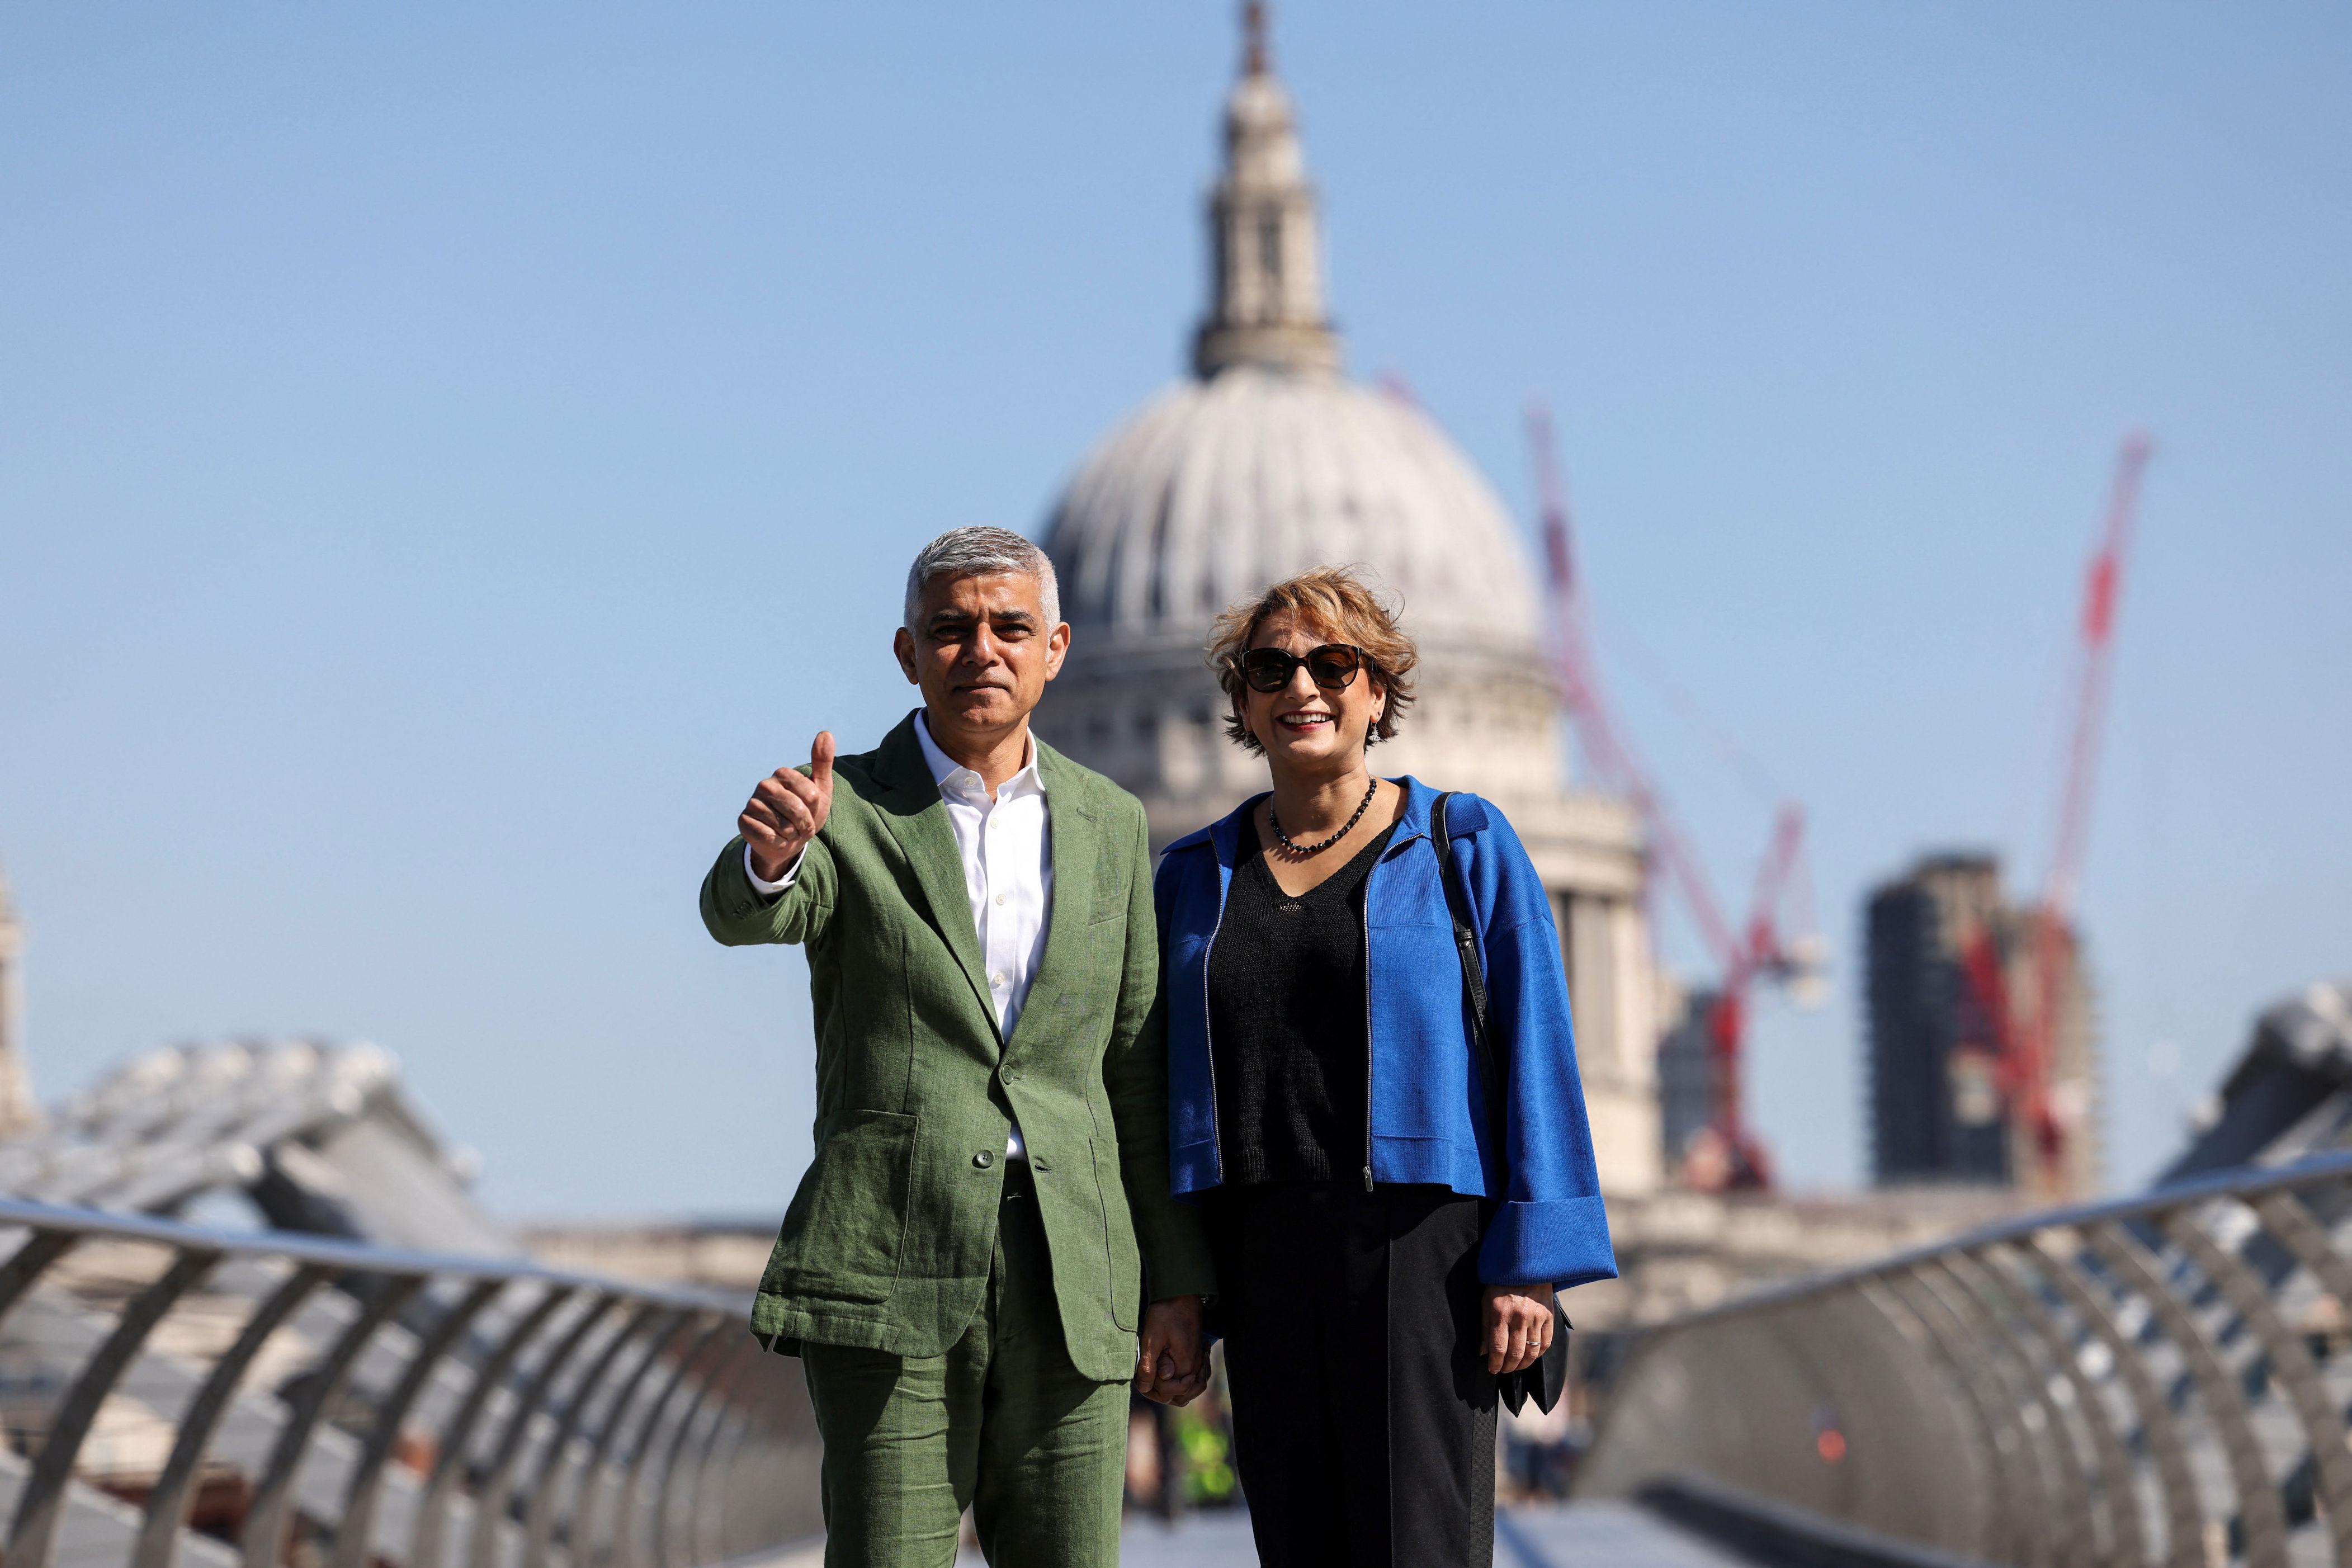 sadiq khan: my green light to transform london